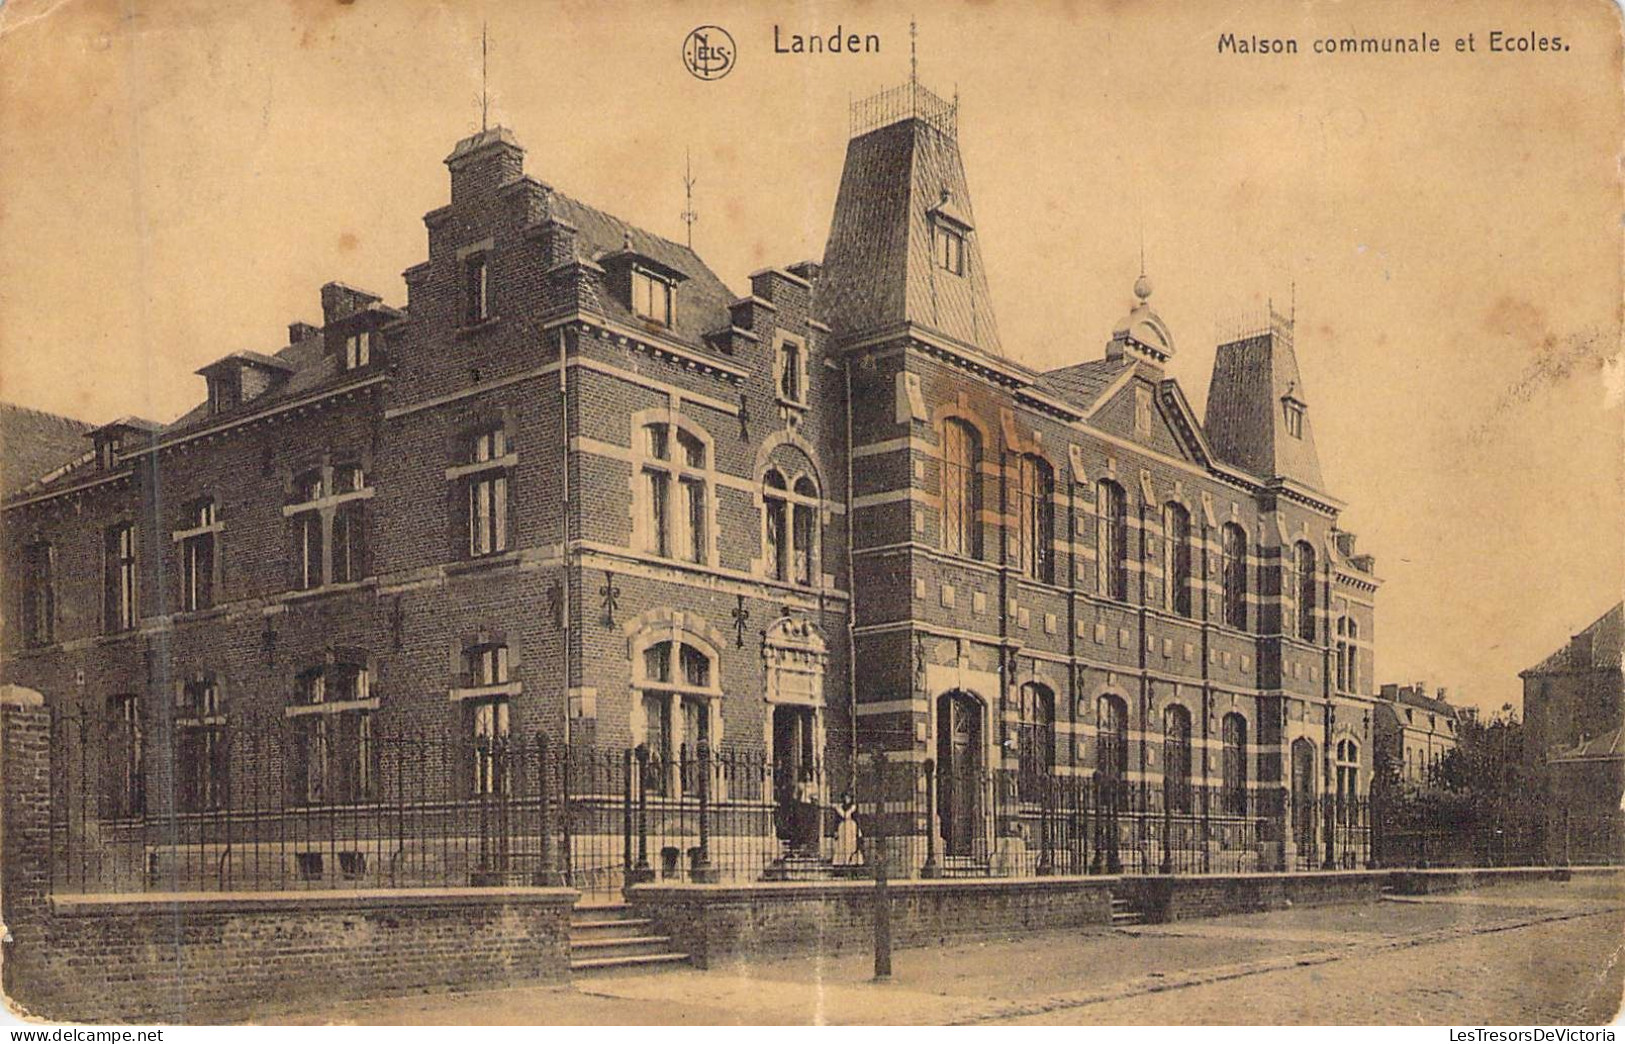 BELGIQUE - LANDEN - Maison Communale Et Ecoles - Edition Ve Dascher - Carte Postale Ancienne - Landen